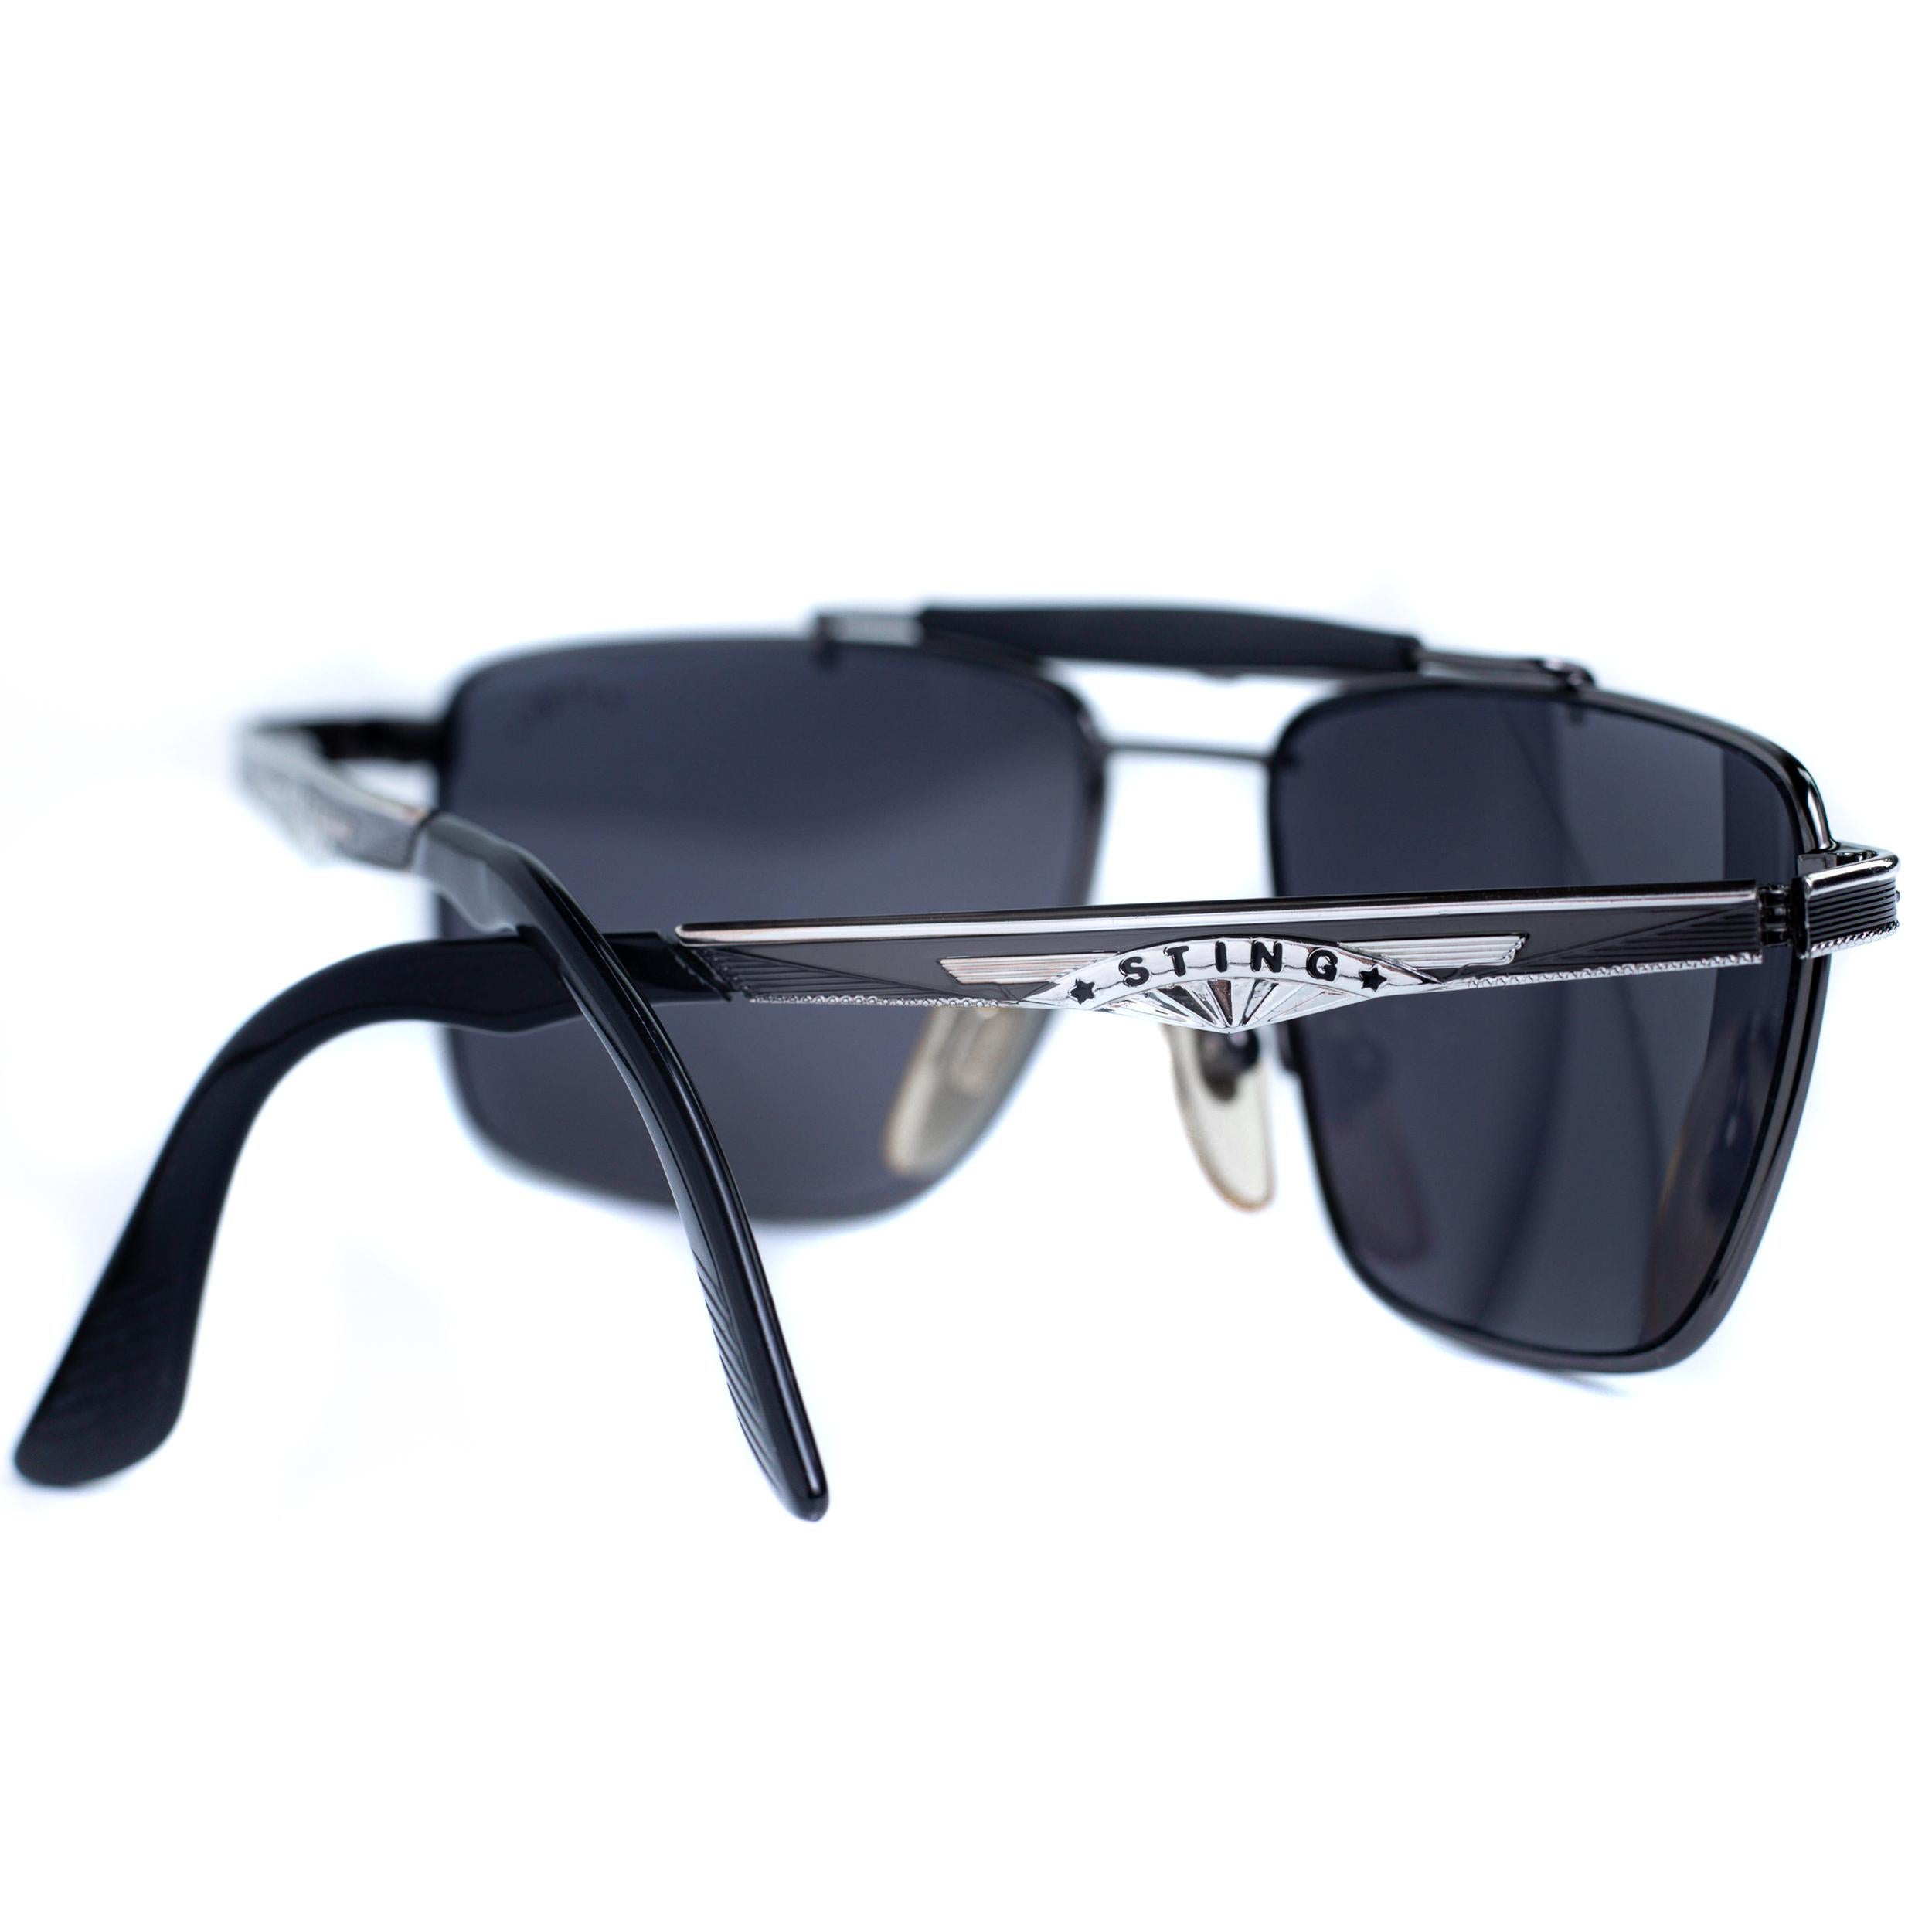 80s aviator sunglasses